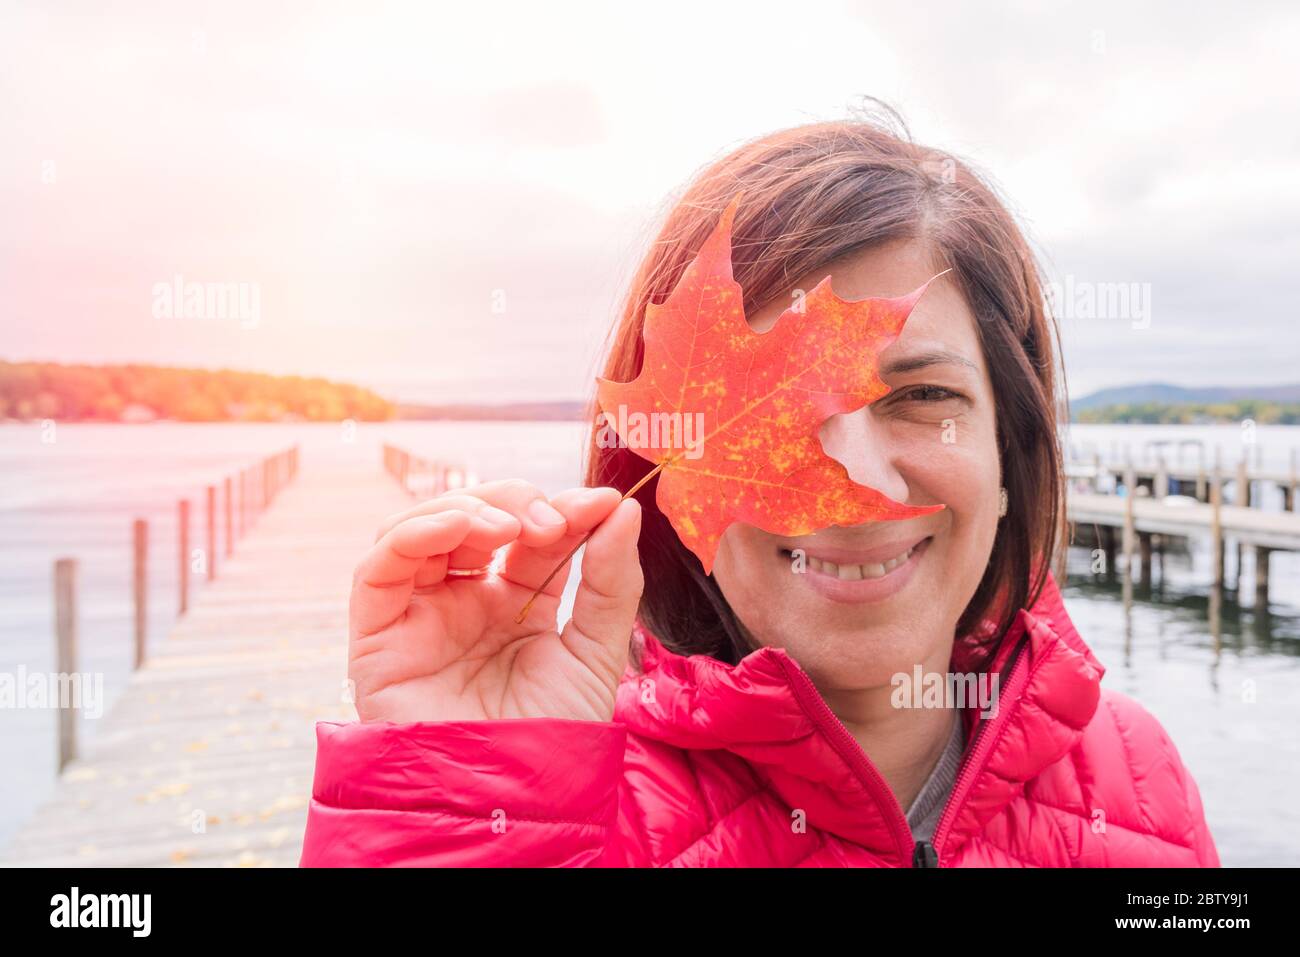 Portrain einer lächelnden Frau, die ein rotes Ahornblatt vor ihrem rechten Auge hält. Im Hintergrund ist ein verlassener Steg auf einem See zu sehen. Stockfoto